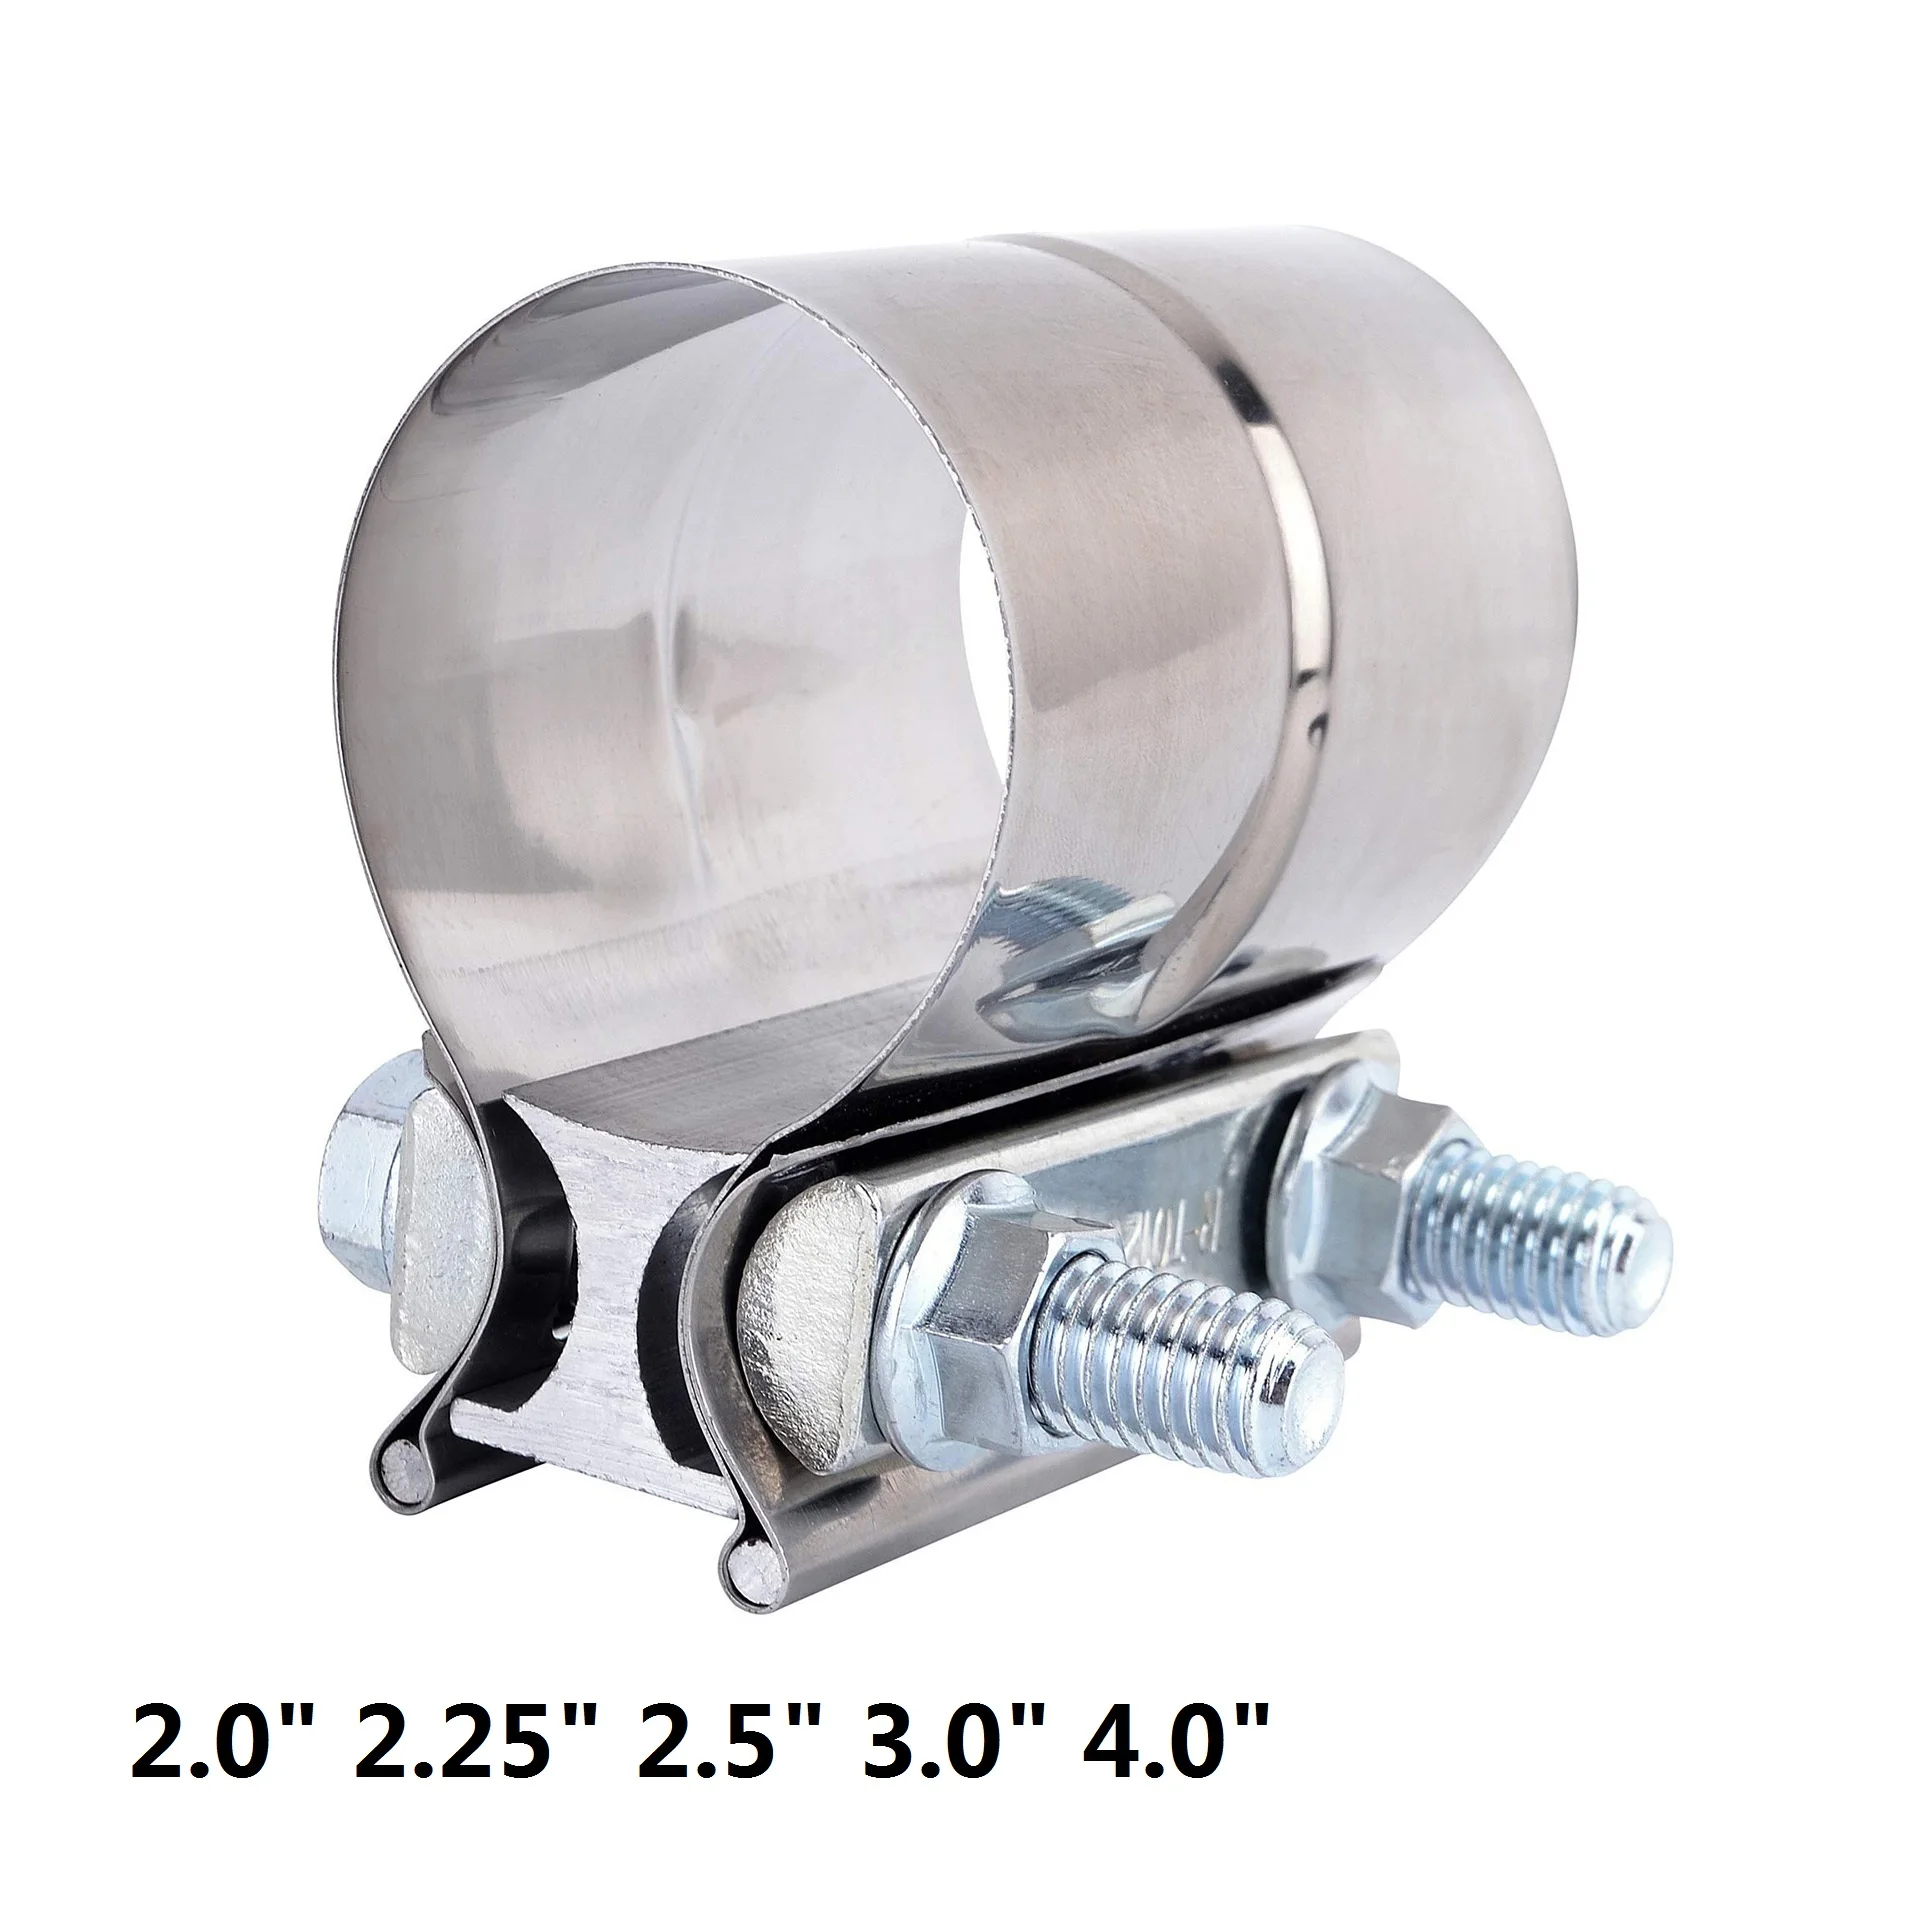 

ESPEEDER 2.0" 2.25" 2.5" 3.0" 4.0" Stainless Exhaust Sleeve Butt Joint Clamp Exhaust Band Clamp Strap Exhaust Clamp For Muffler